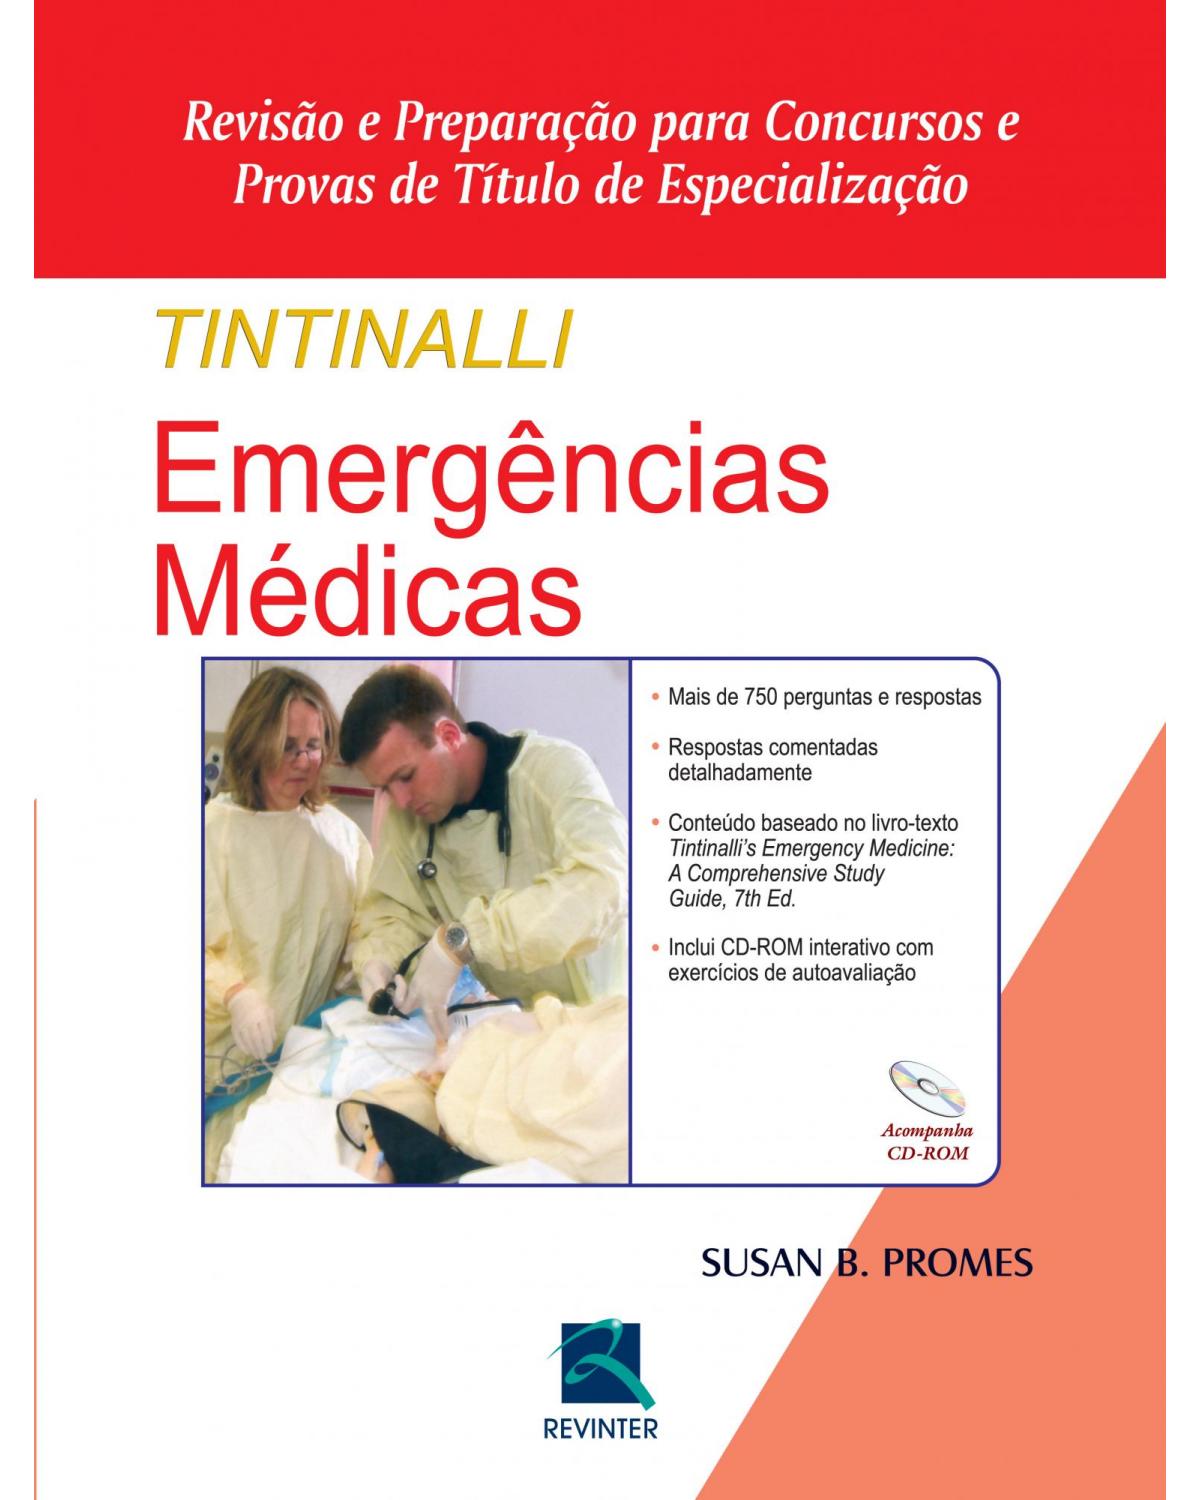 Tintinalli - Emergências médicas - revisão e preparação para concursos e provas de título de especialização - 7ª Edição | 2015